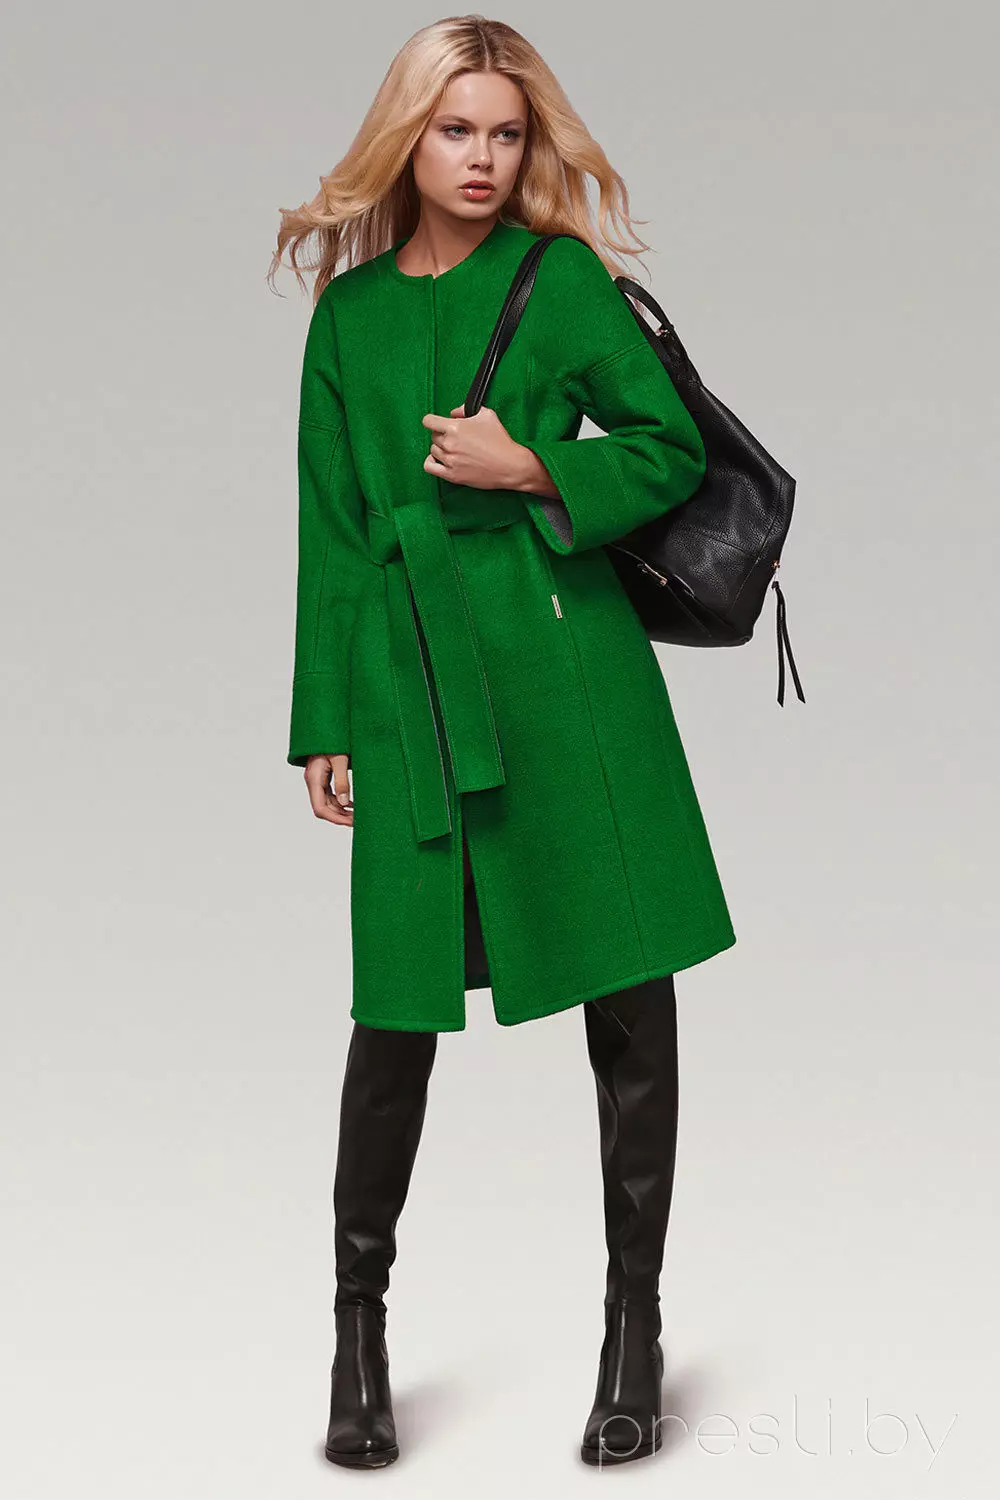 Зеленое пальто купить. Зеленое пальто. Зелёное пальто женские. Ярко зеленое пальто. Пальто зеленого цвета.